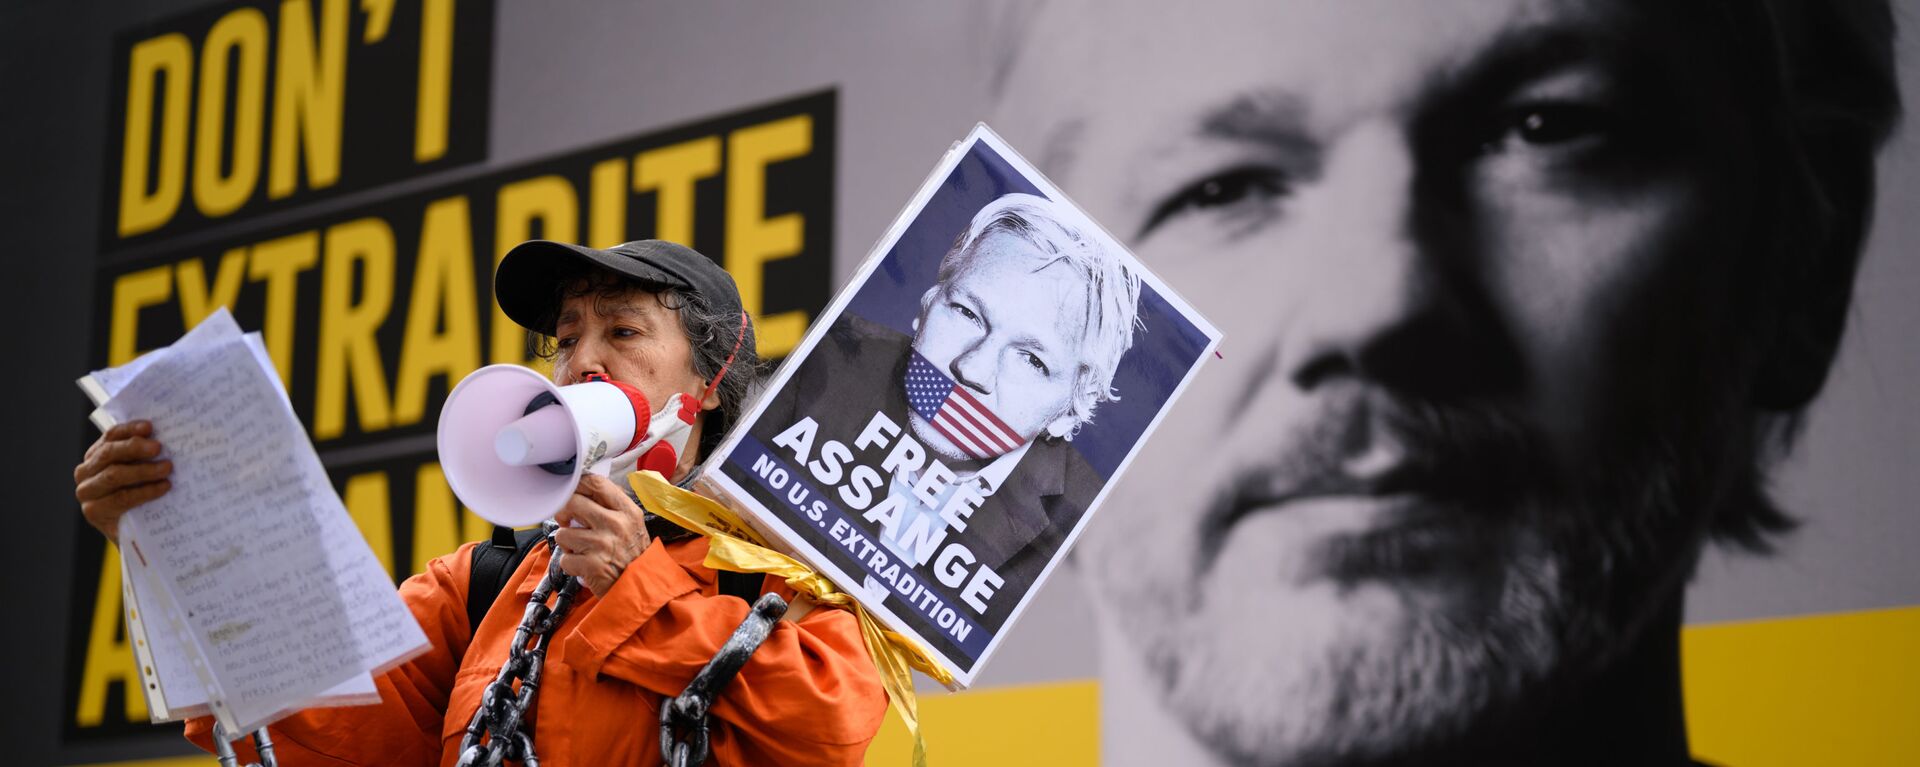 Apoiadora de Julian Assange durante manifestação contra sua extradição, em Londres - Sputnik Brasil, 1920, 27.10.2021